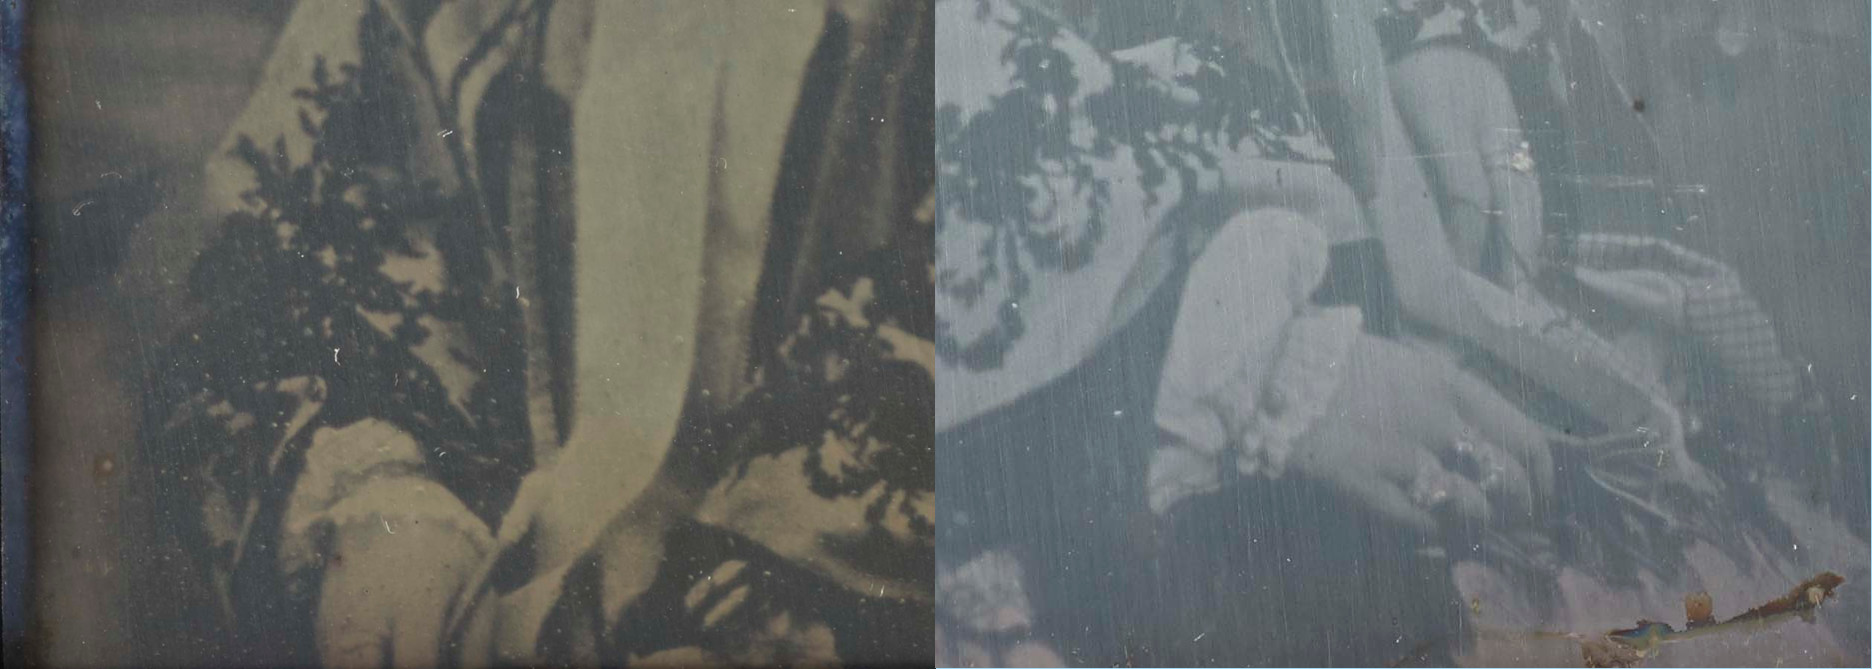 Victorian daguerreotype in close-up